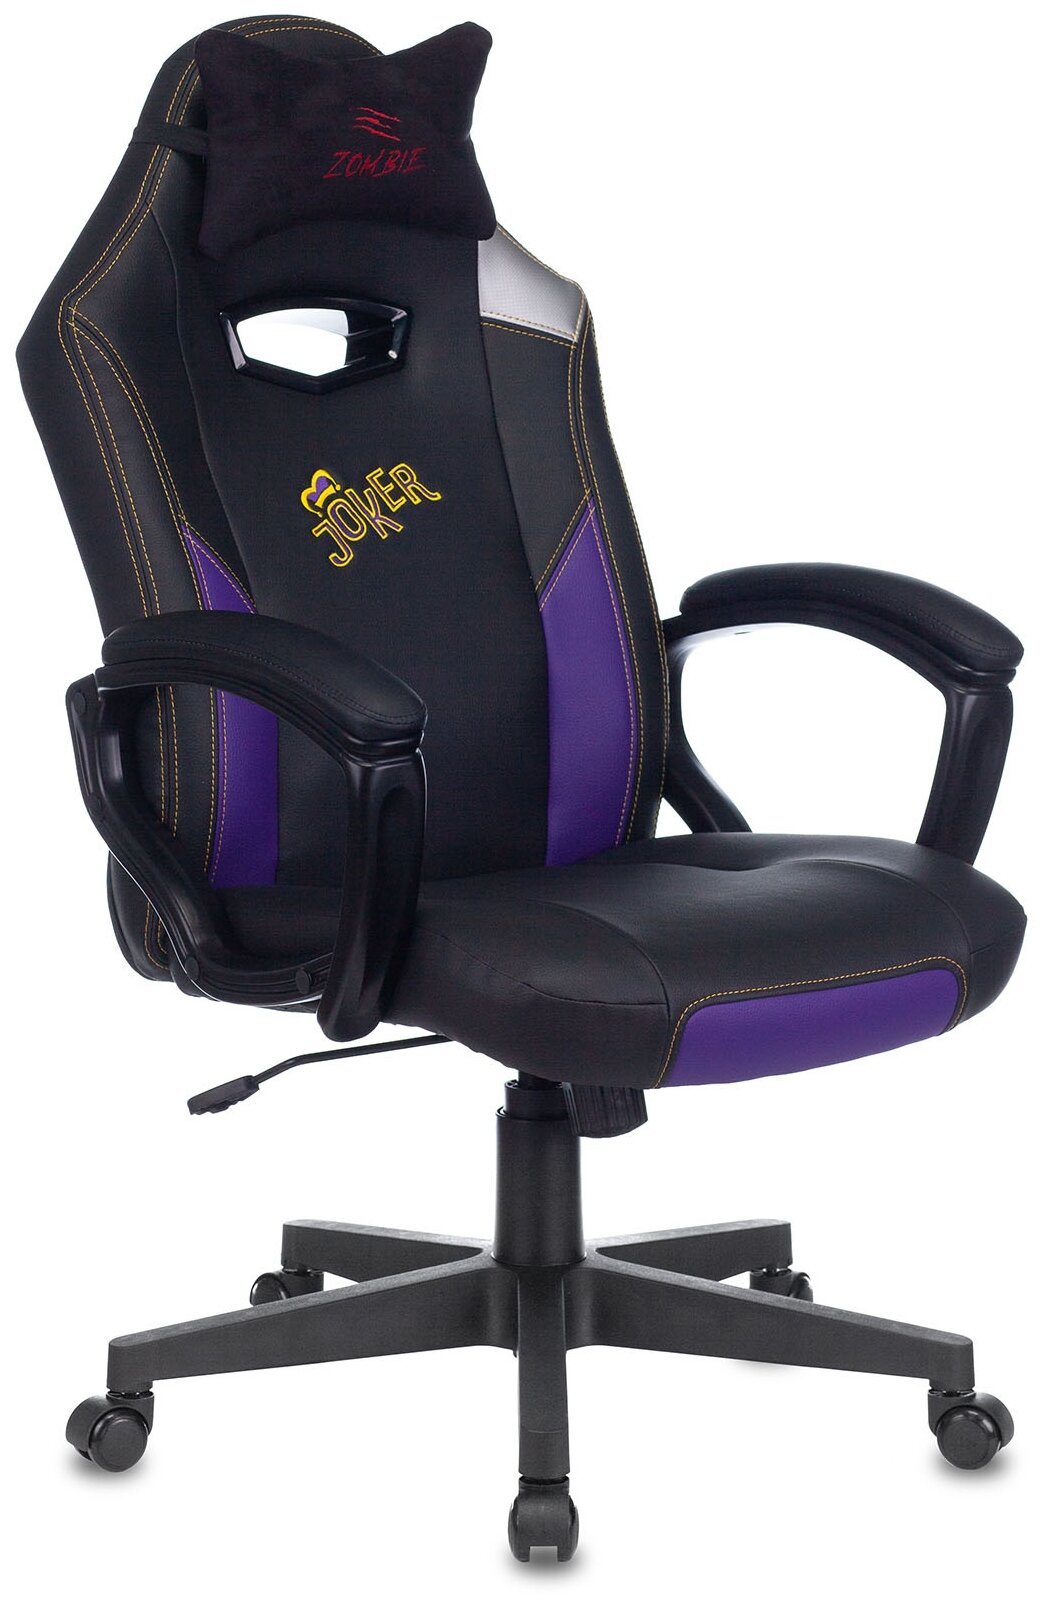 Кресло игровое Zombie HERO JOKER (Цвет: Black/Purple)